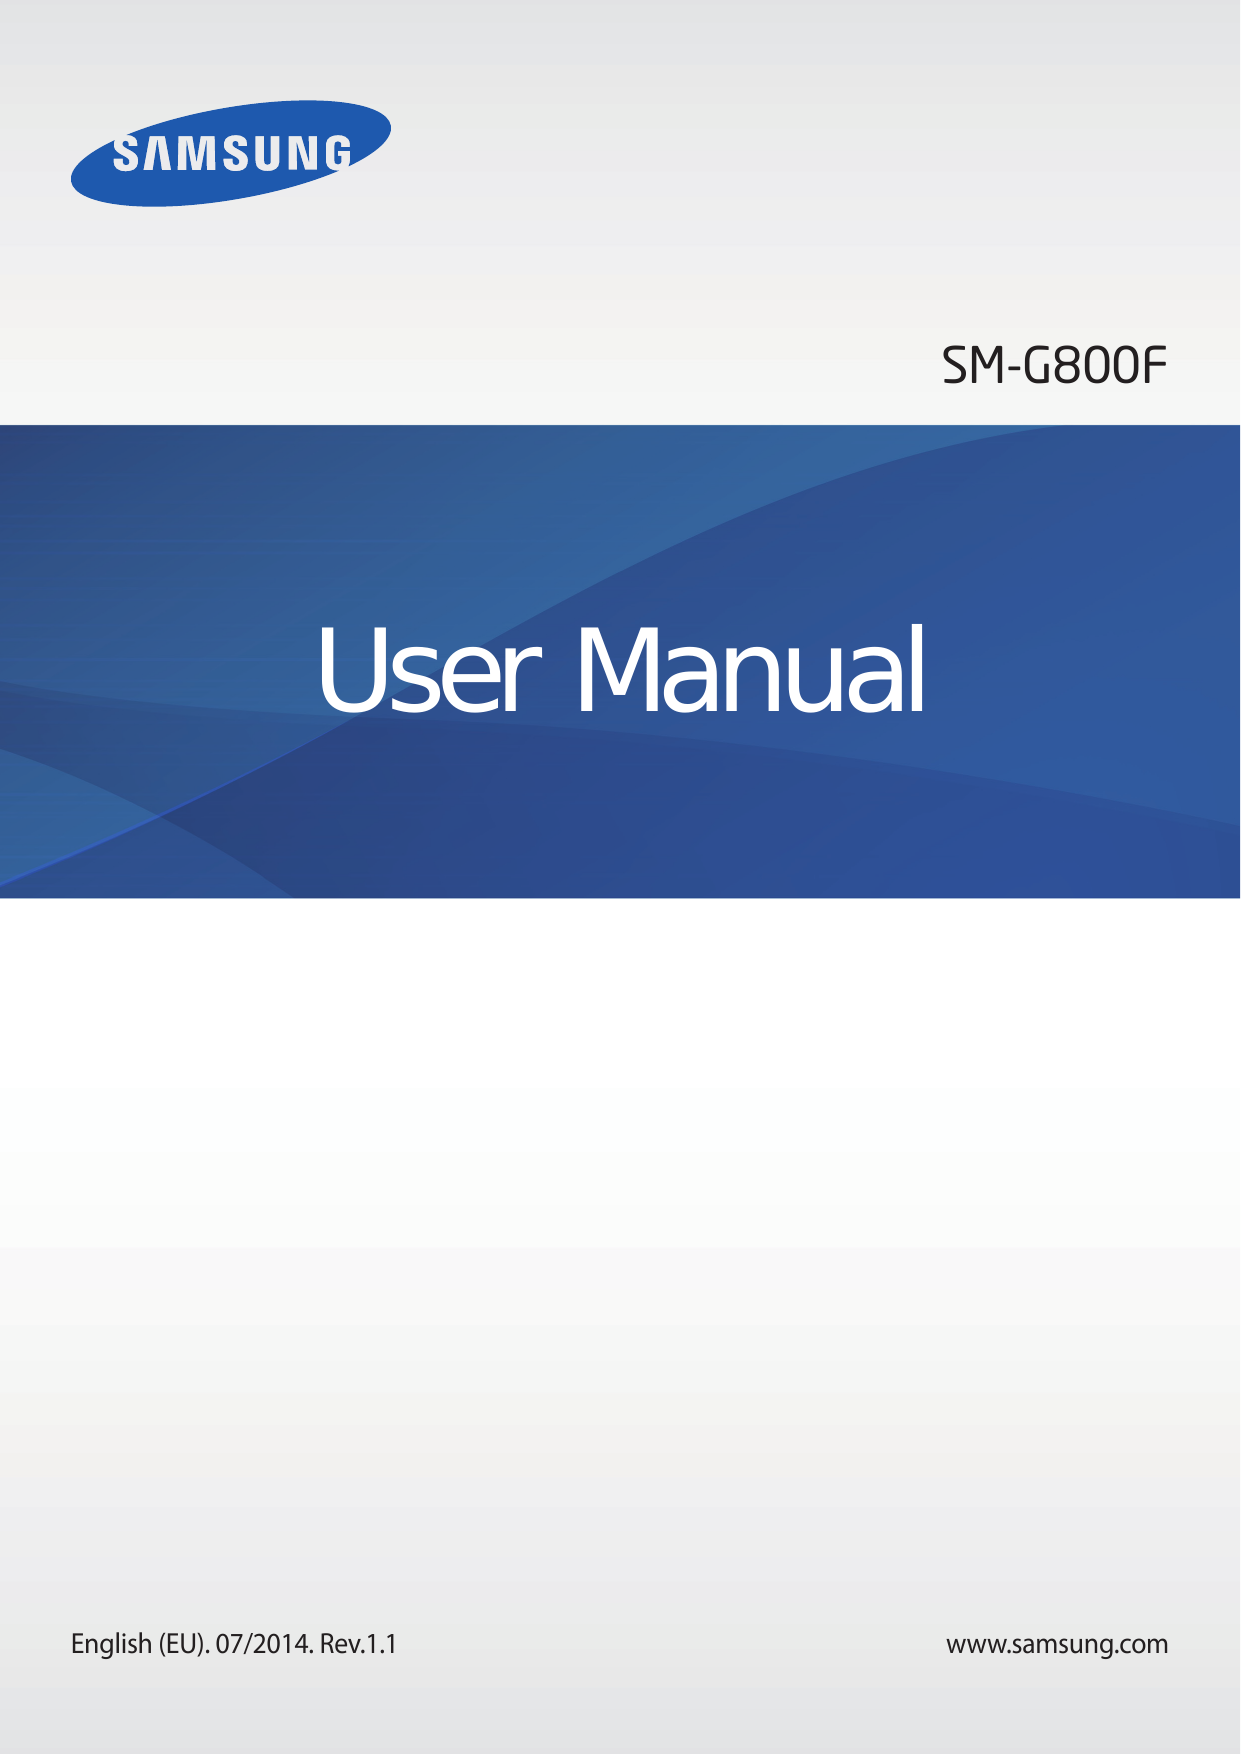 SM-G800FUser ManualEnglish (EU). 07/2014. Rev.1.1www.samsung.com